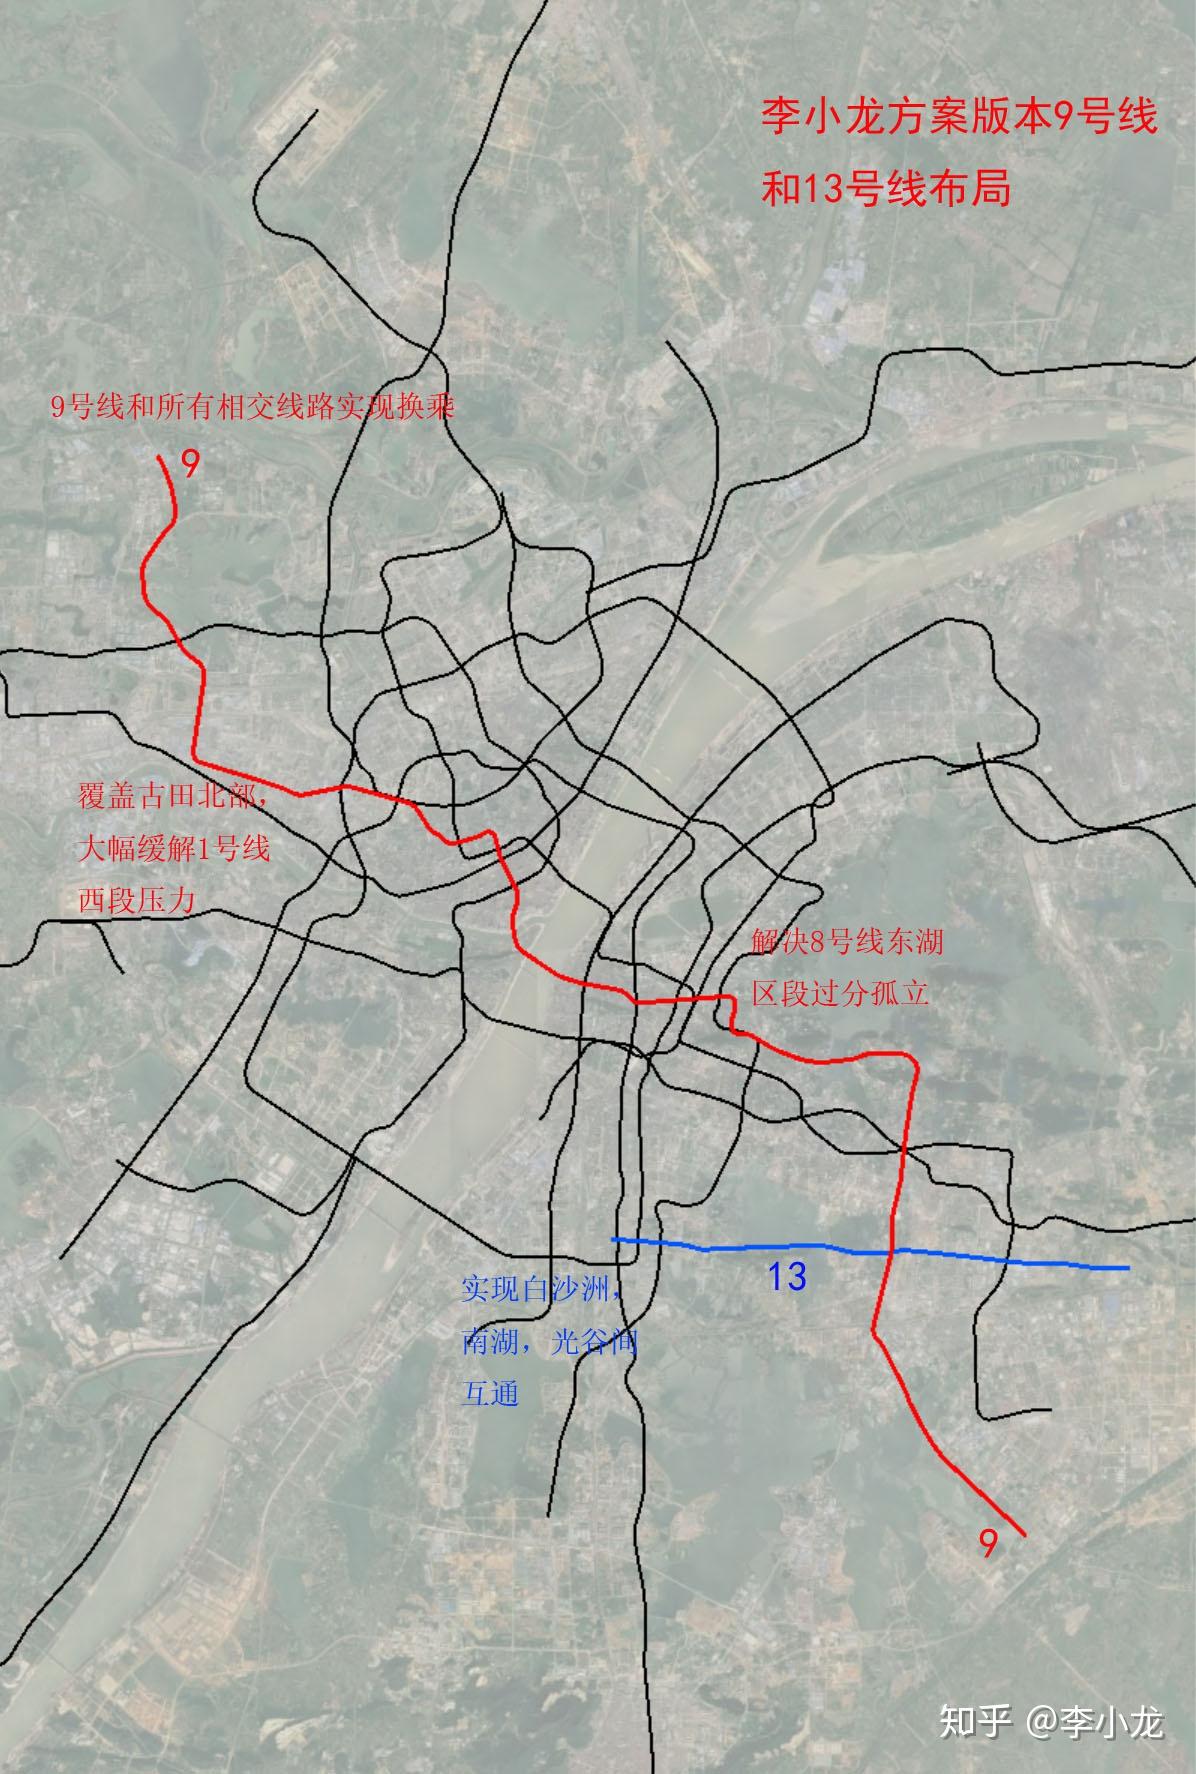 武汉地铁9号线和13号线规划走向两个方案的对比